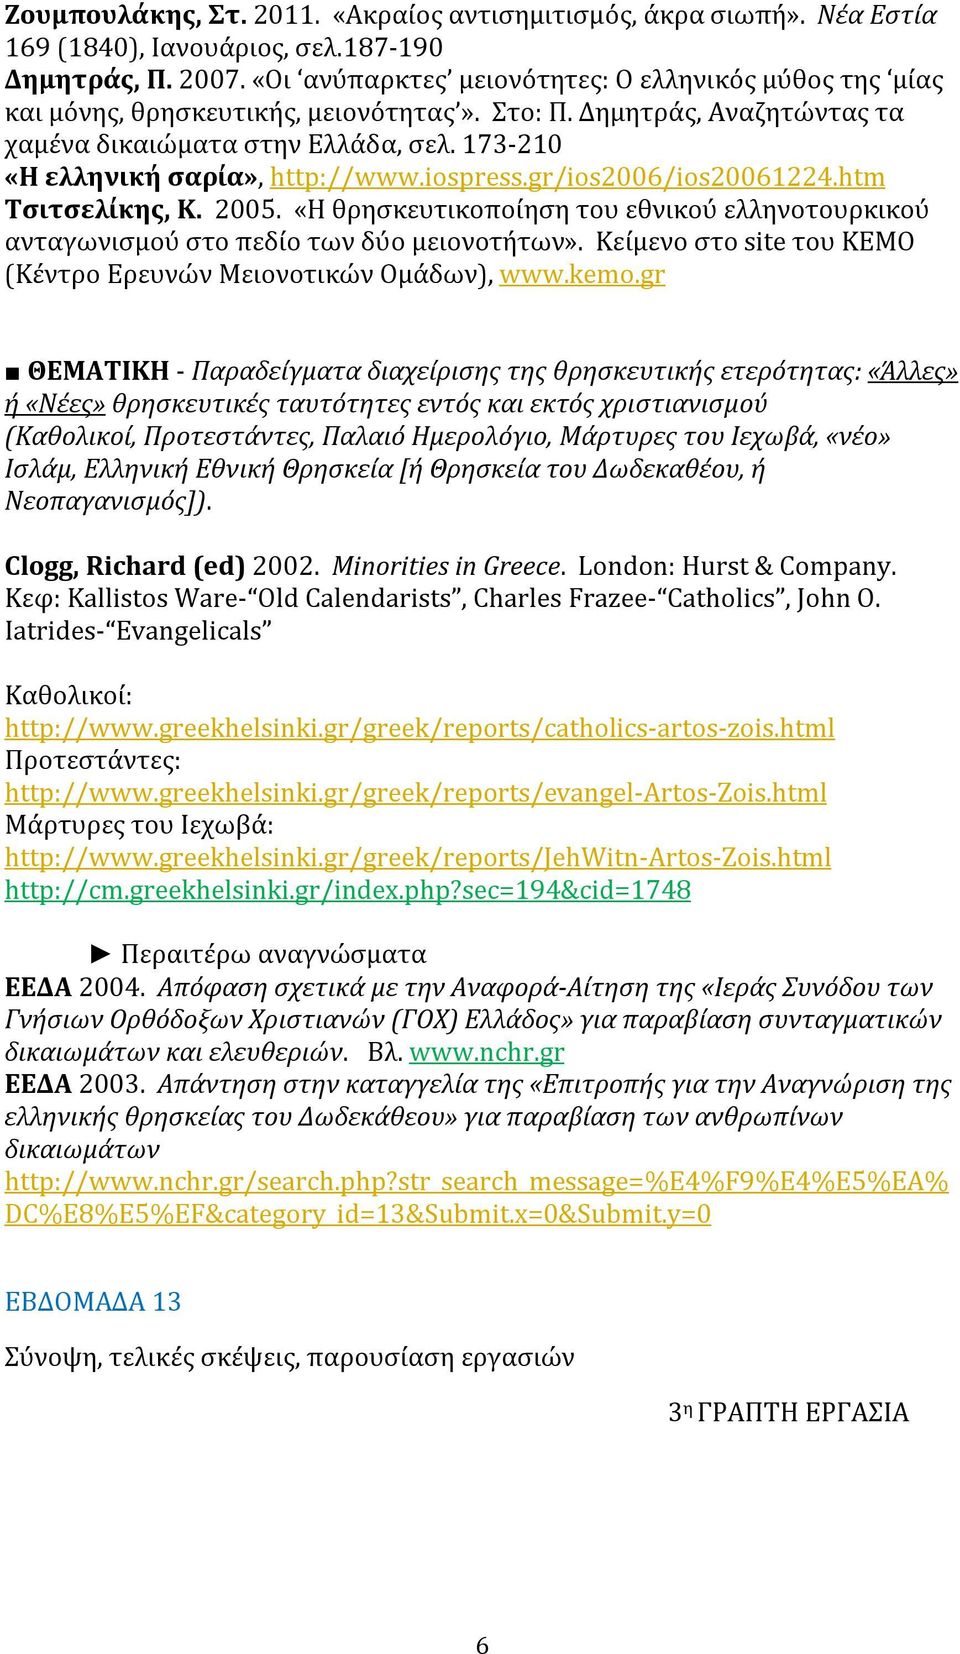 173-210 «Η ελληνική σαρία», http://www.iospress.gr/ios2006/ios20061224.htm Τσιτσελίκης, Κ. 2005. «Η θρησκευτικοποίηση του εθνικού ελληνοτουρκικού ανταγωνισμού στο πεδίο των δύο μειονοτήτων».